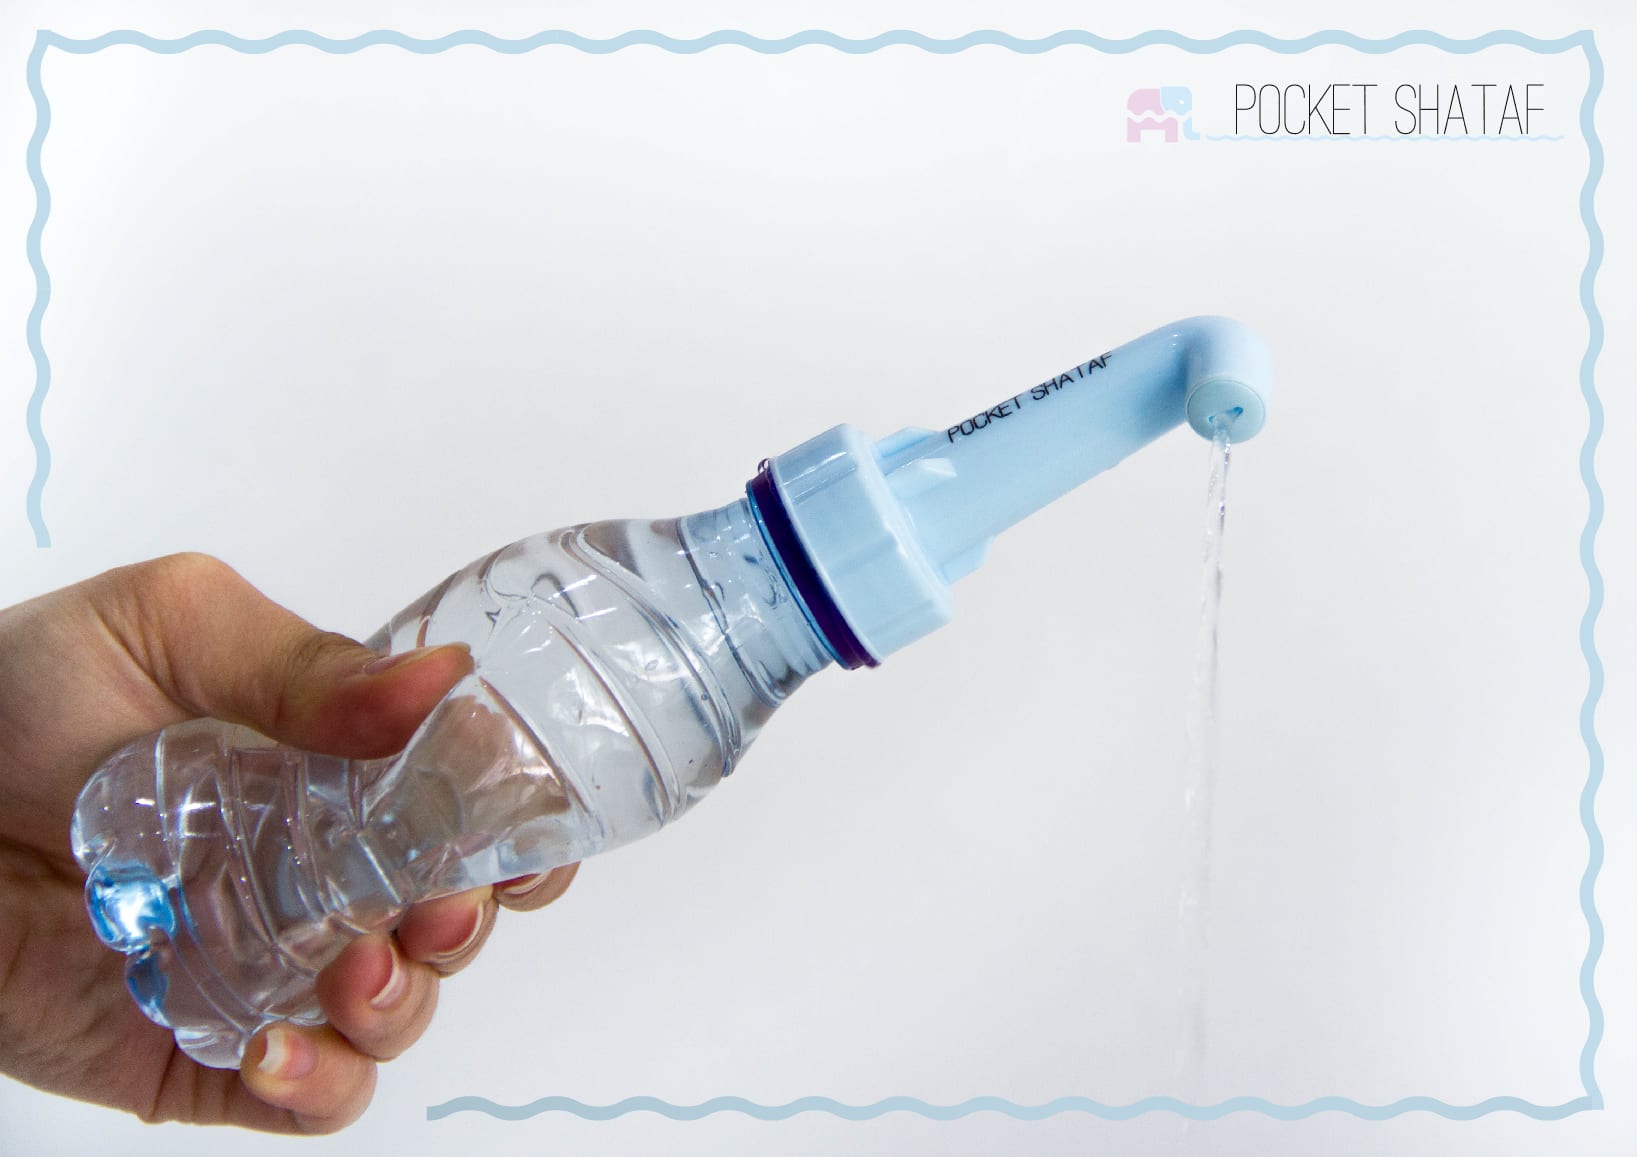 يُثبّت الشطاف المحمول على قارورة ماء بلاستيكية، ويندفع منه الماء بقوة الضغط. 